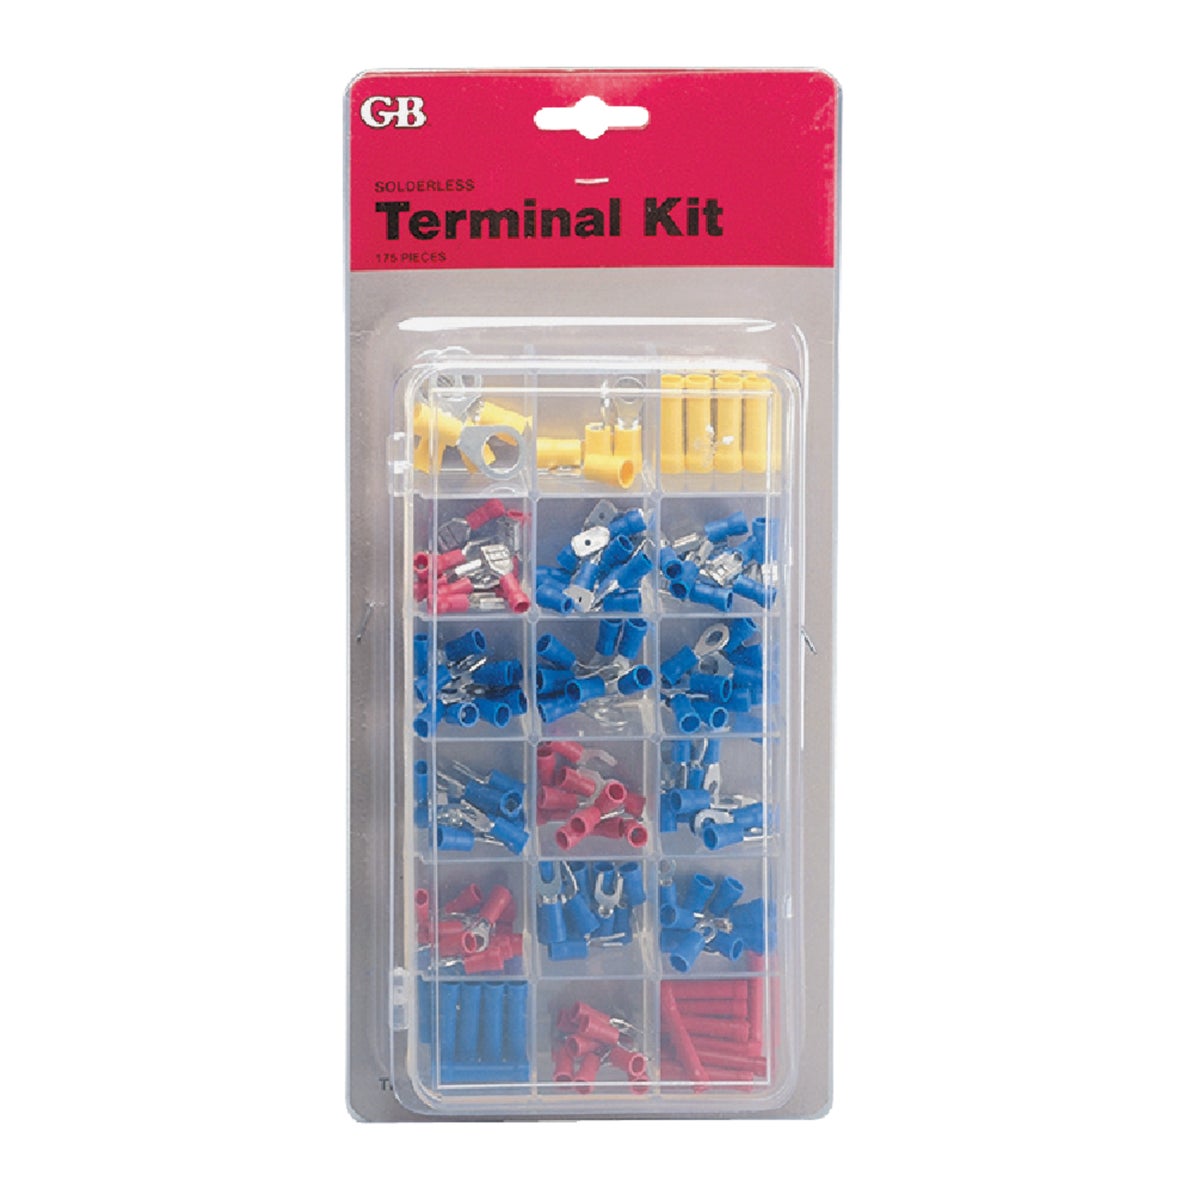 GARDNER BENDER TK-175 Solderless Electrical Terminal Kit, Assorted, 175-pcs